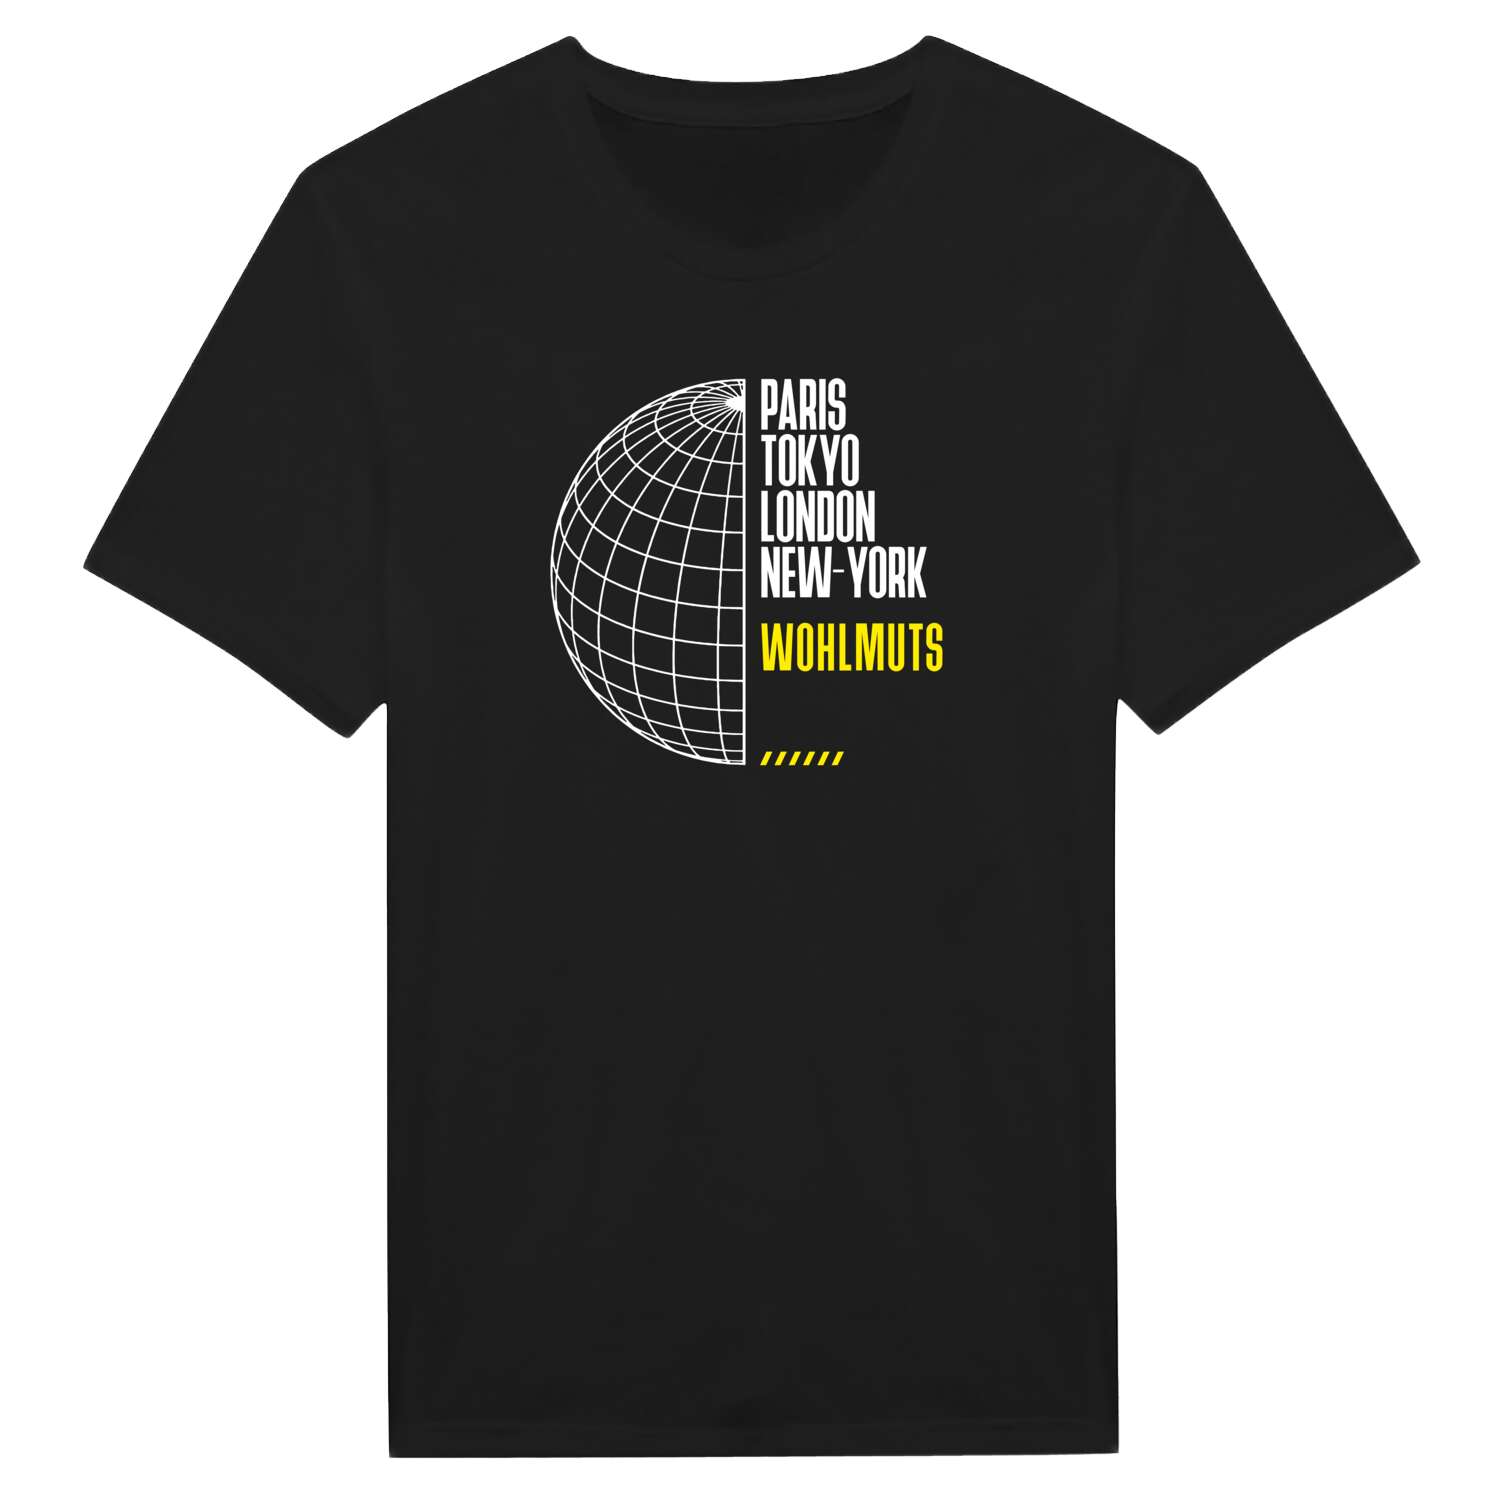 Wohlmuts T-Shirt »Paris Tokyo London«